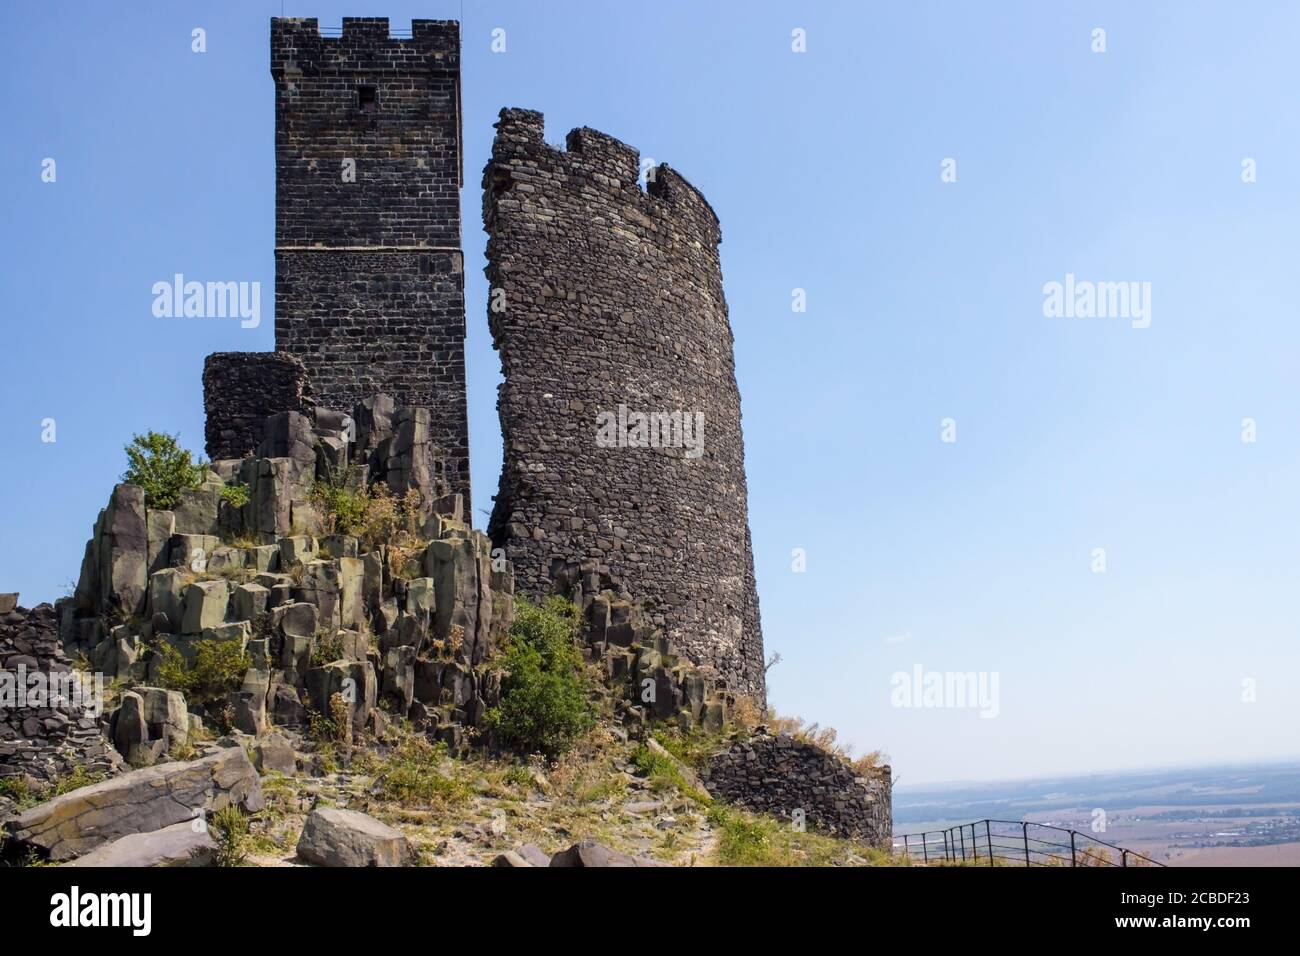 Ruines del castello di Hazmburk in cima alla cima della catena montuosa di ceske stredohori. Vista sulla torre bianca, le rocce e le pareti. Foto Stock